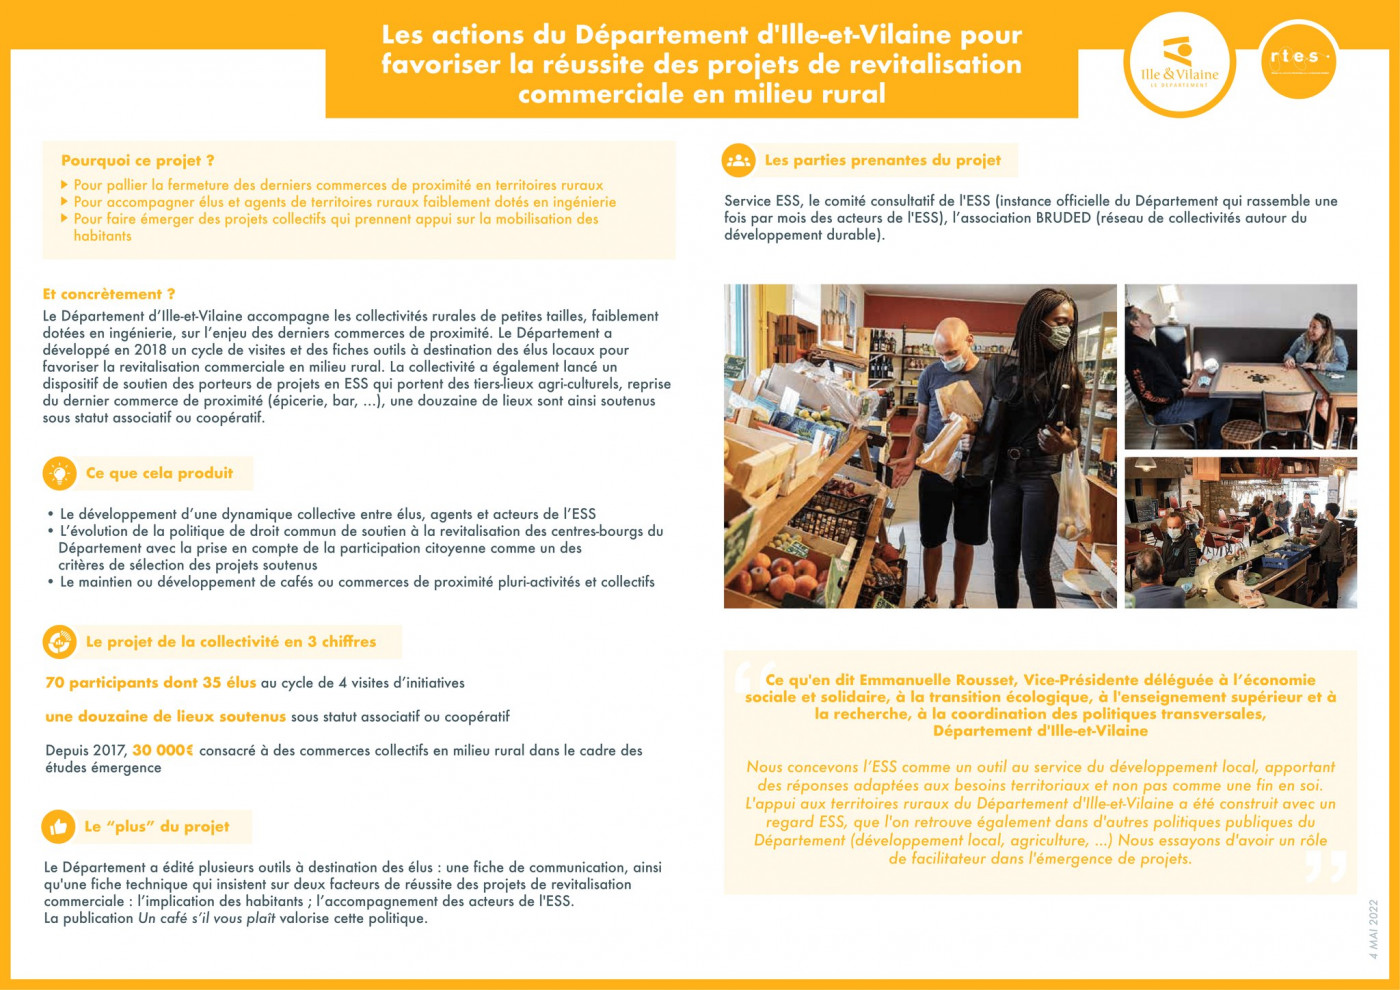 Les actions du Département d'Ille-et-Vilaine pour favoriser la réussite des projets de revitalisation commerciale en milieu rural